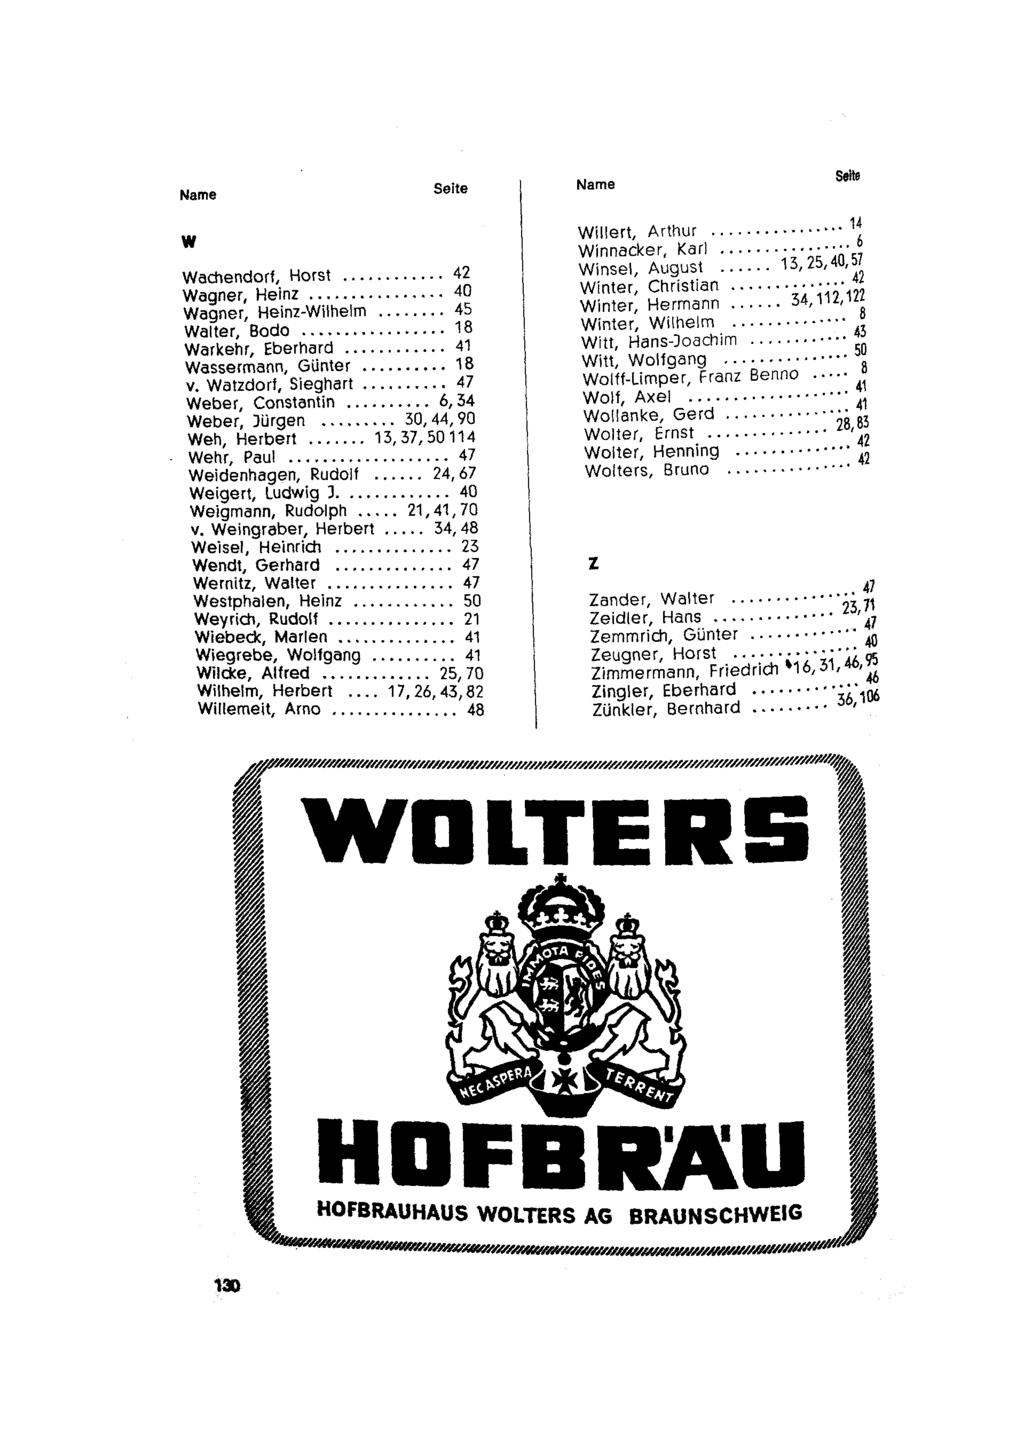 Name Seite Name Seite w Wachendor!, Horst... 42 Wagner, Heinz... 40 Wagner, Heinz-Wilhelm... 45 Walter, Bada..... 18 Warkehr, Eberhard... 41 Wassermann, Günter.... 18 v. Watzdarf, Sieghart.